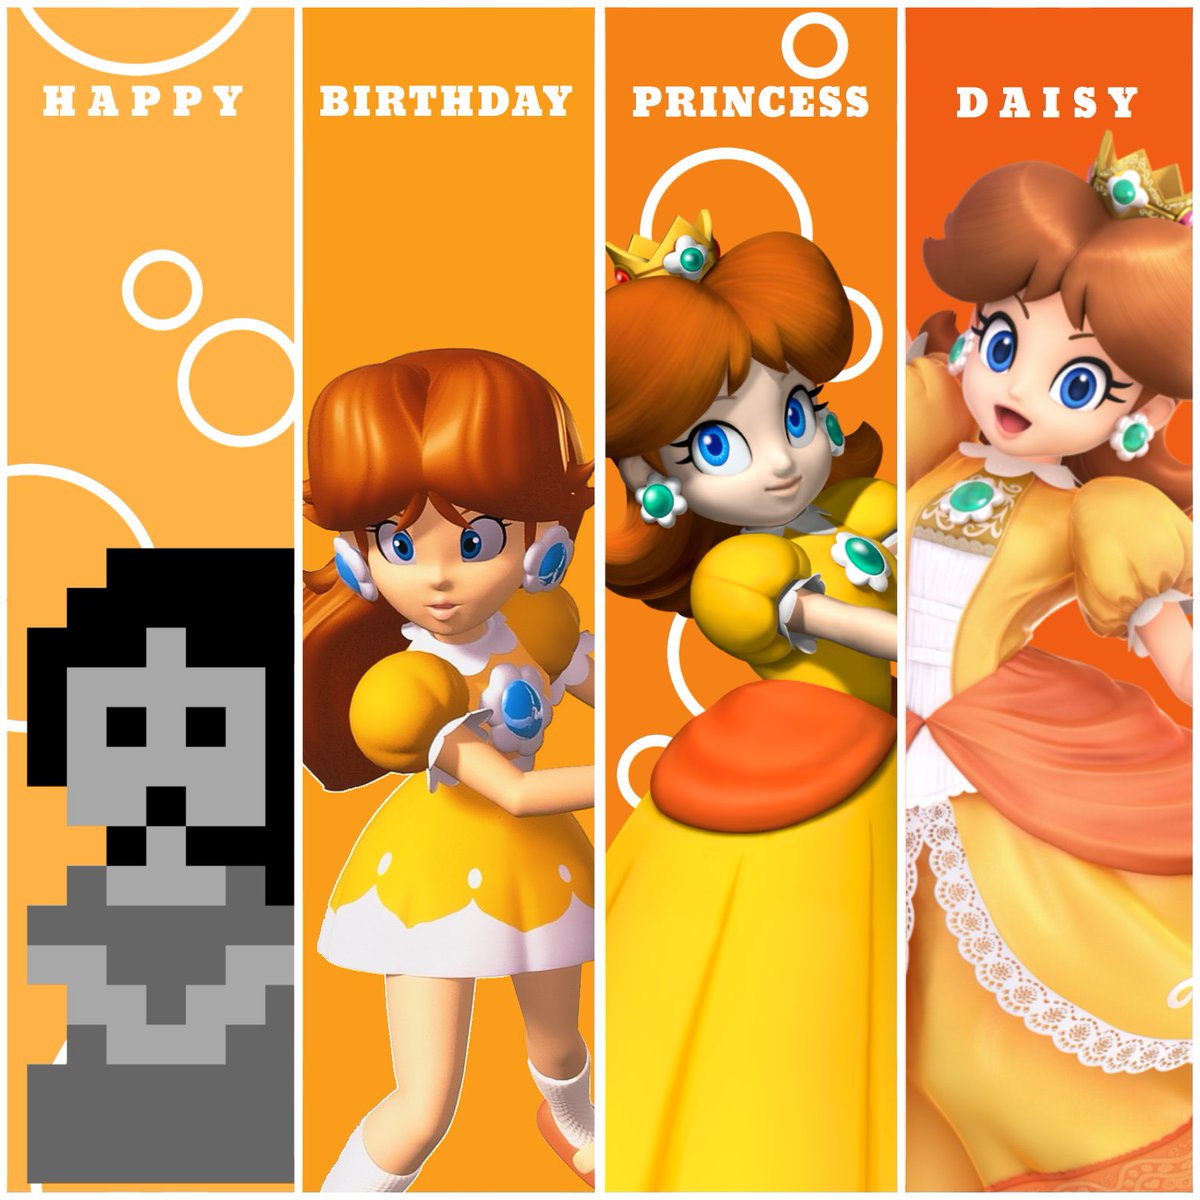 Happy 35th anniversary #PrincessDaisy ♡

#Mario #NintendoSwitch #Daisy